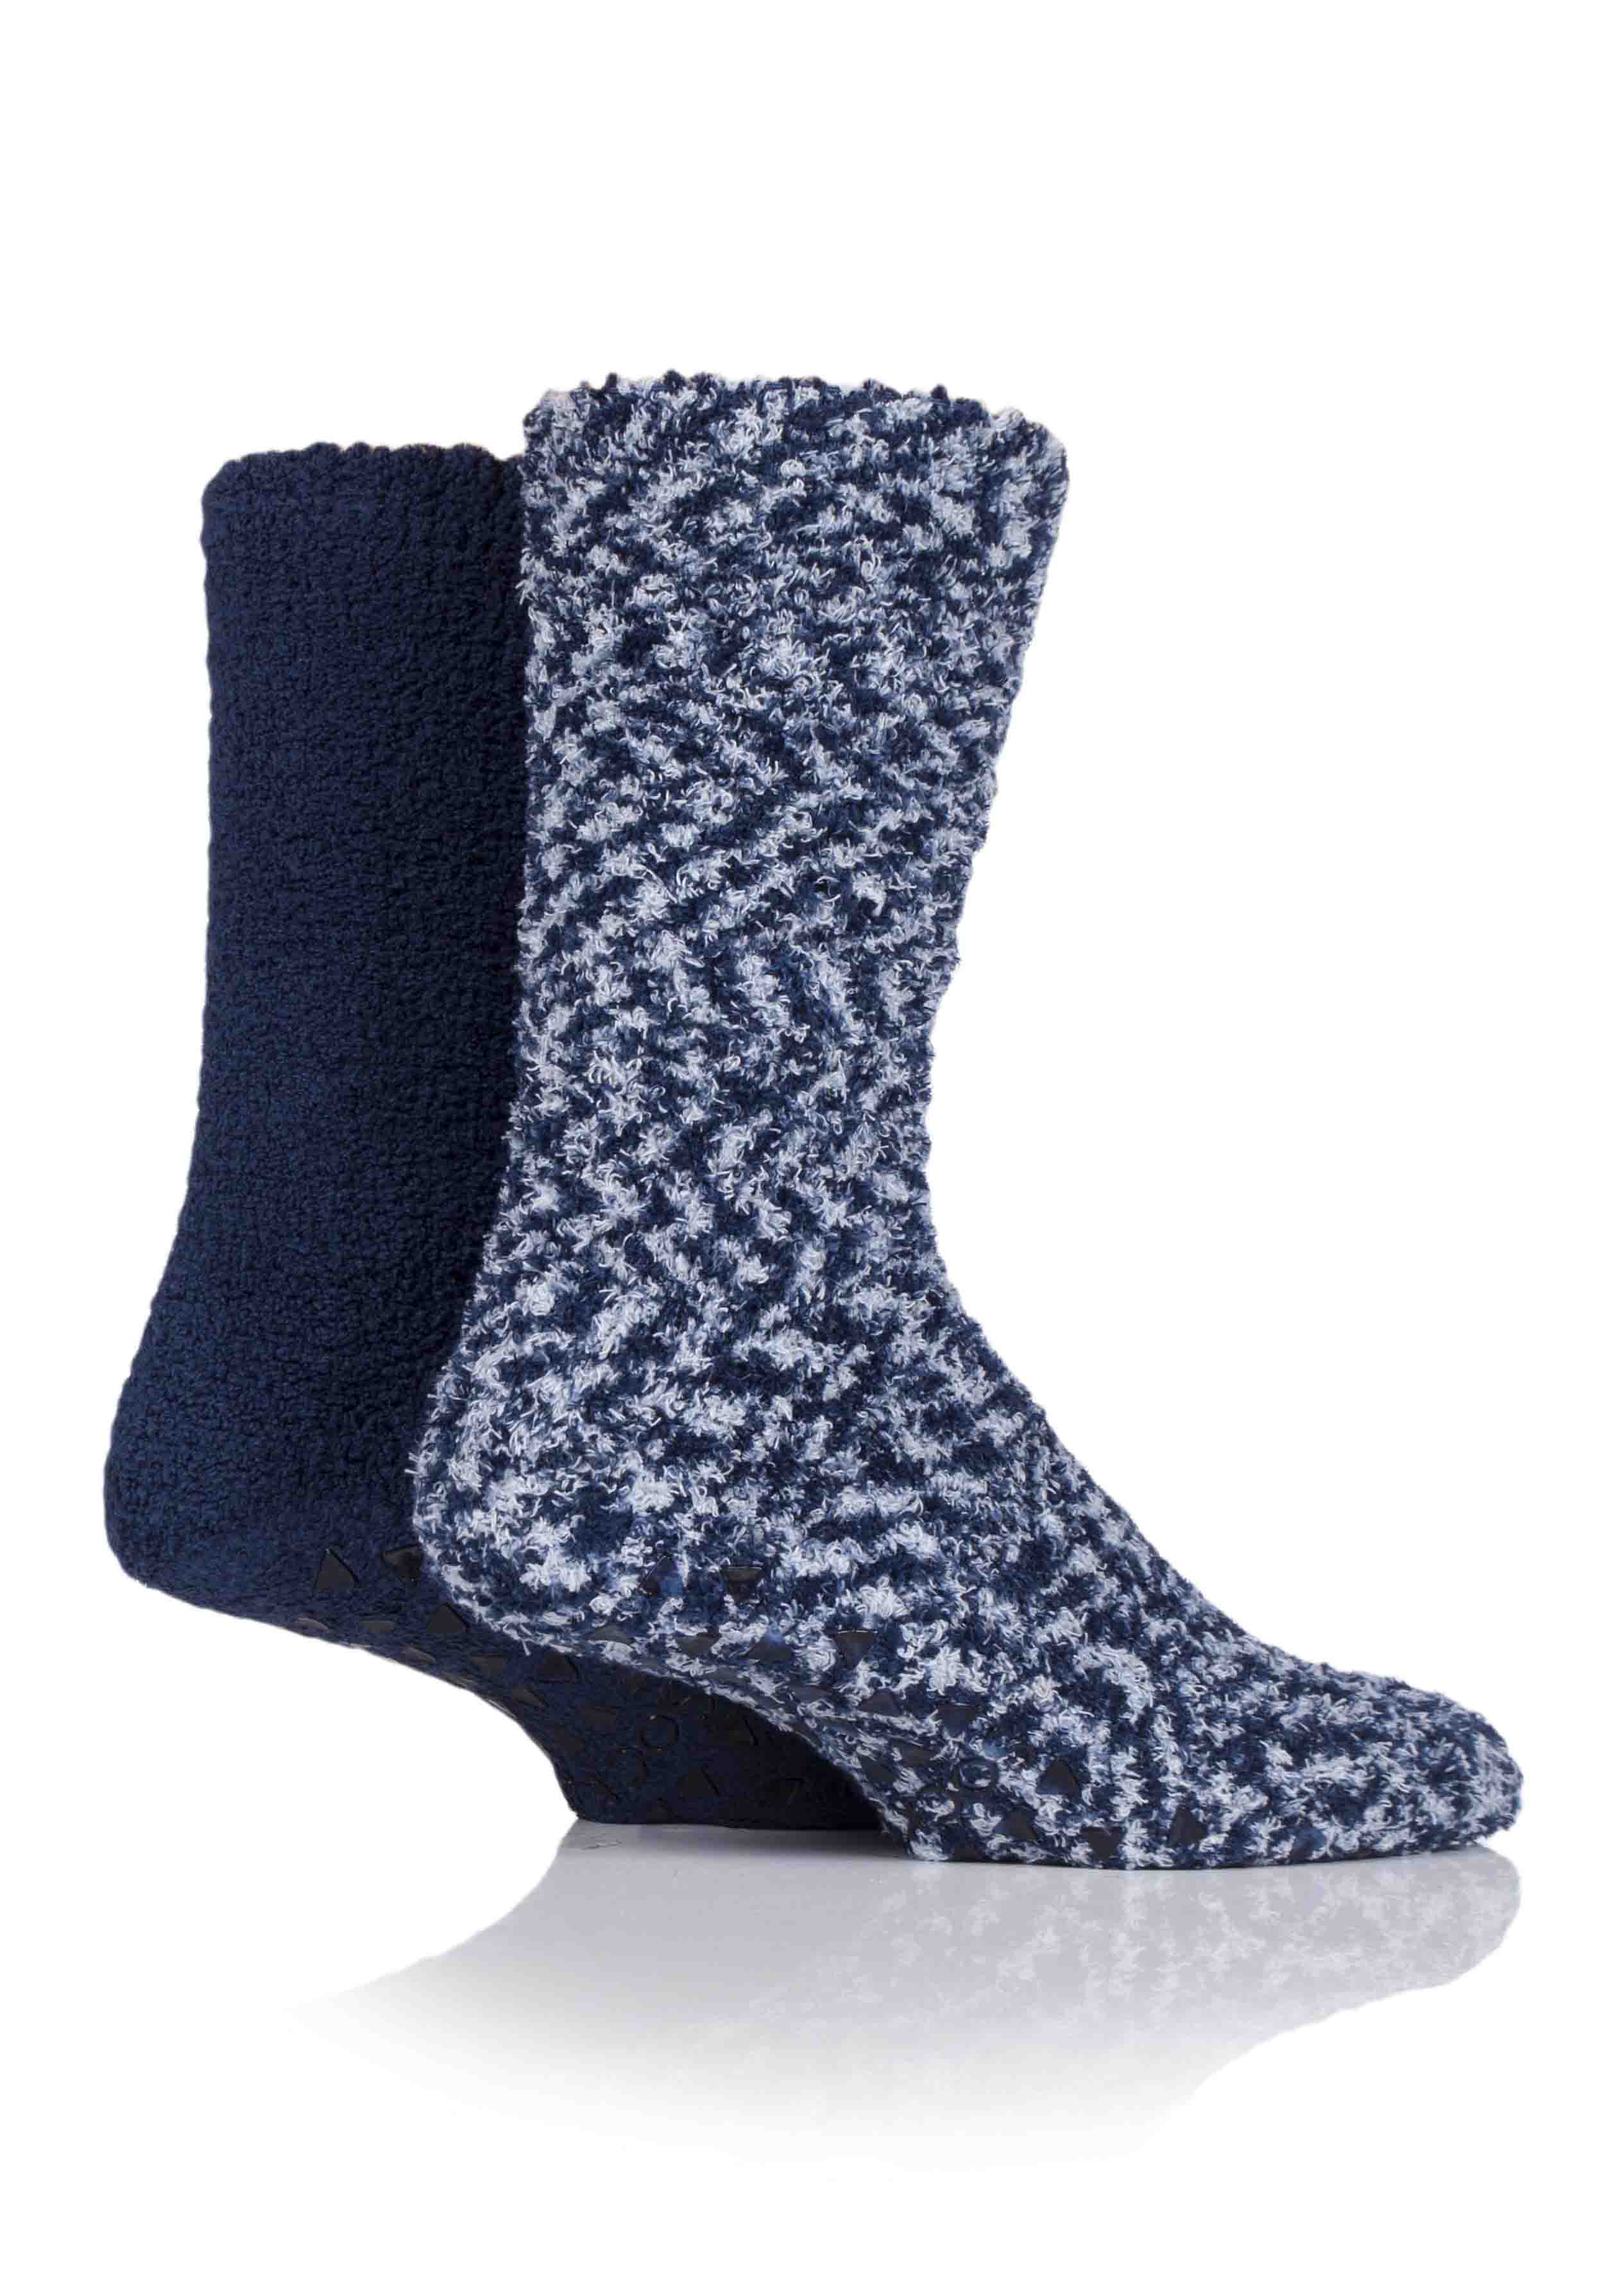 Narwhal Sock Slippers | Plush Narwhal Slipper Socks